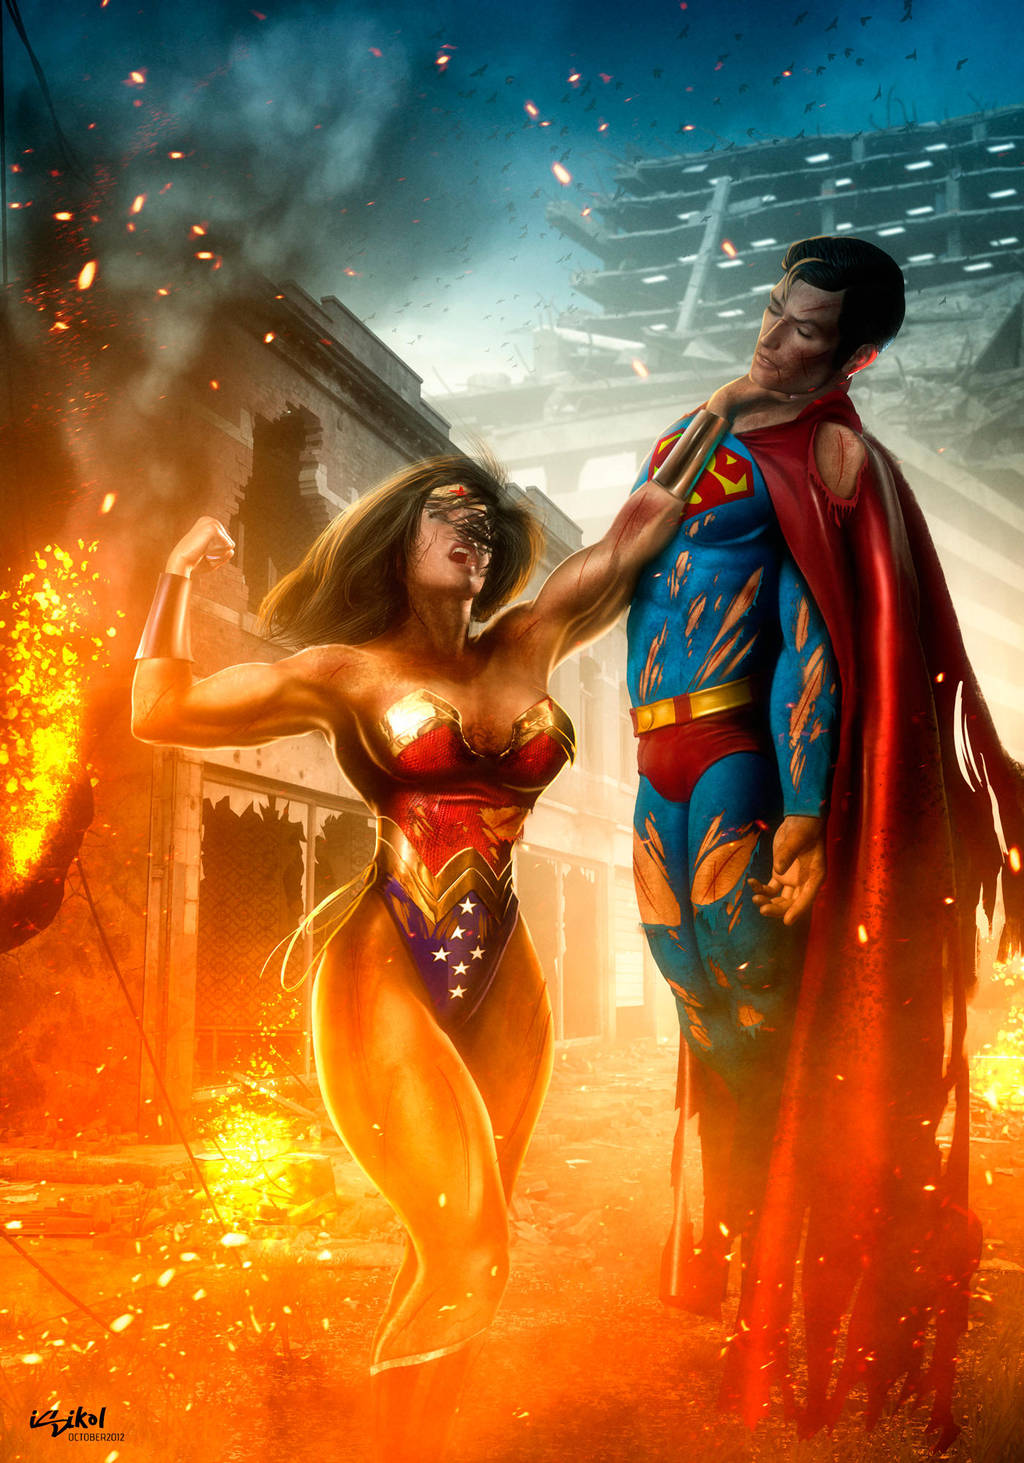 Wonderwoman Beats Superman By Isikol On Deviantart